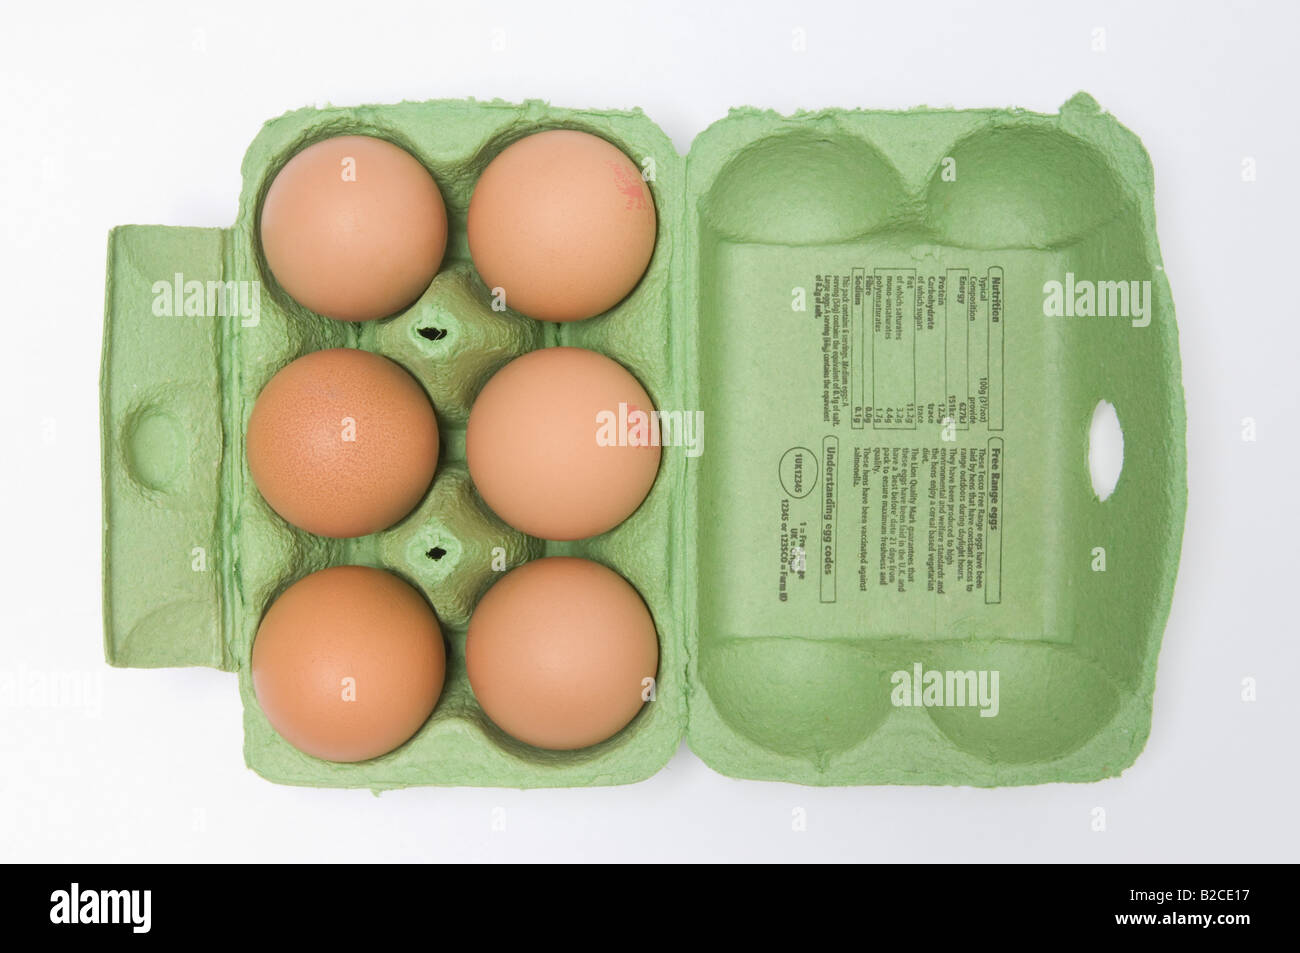 Half dozen eggs in carton Stock Photo